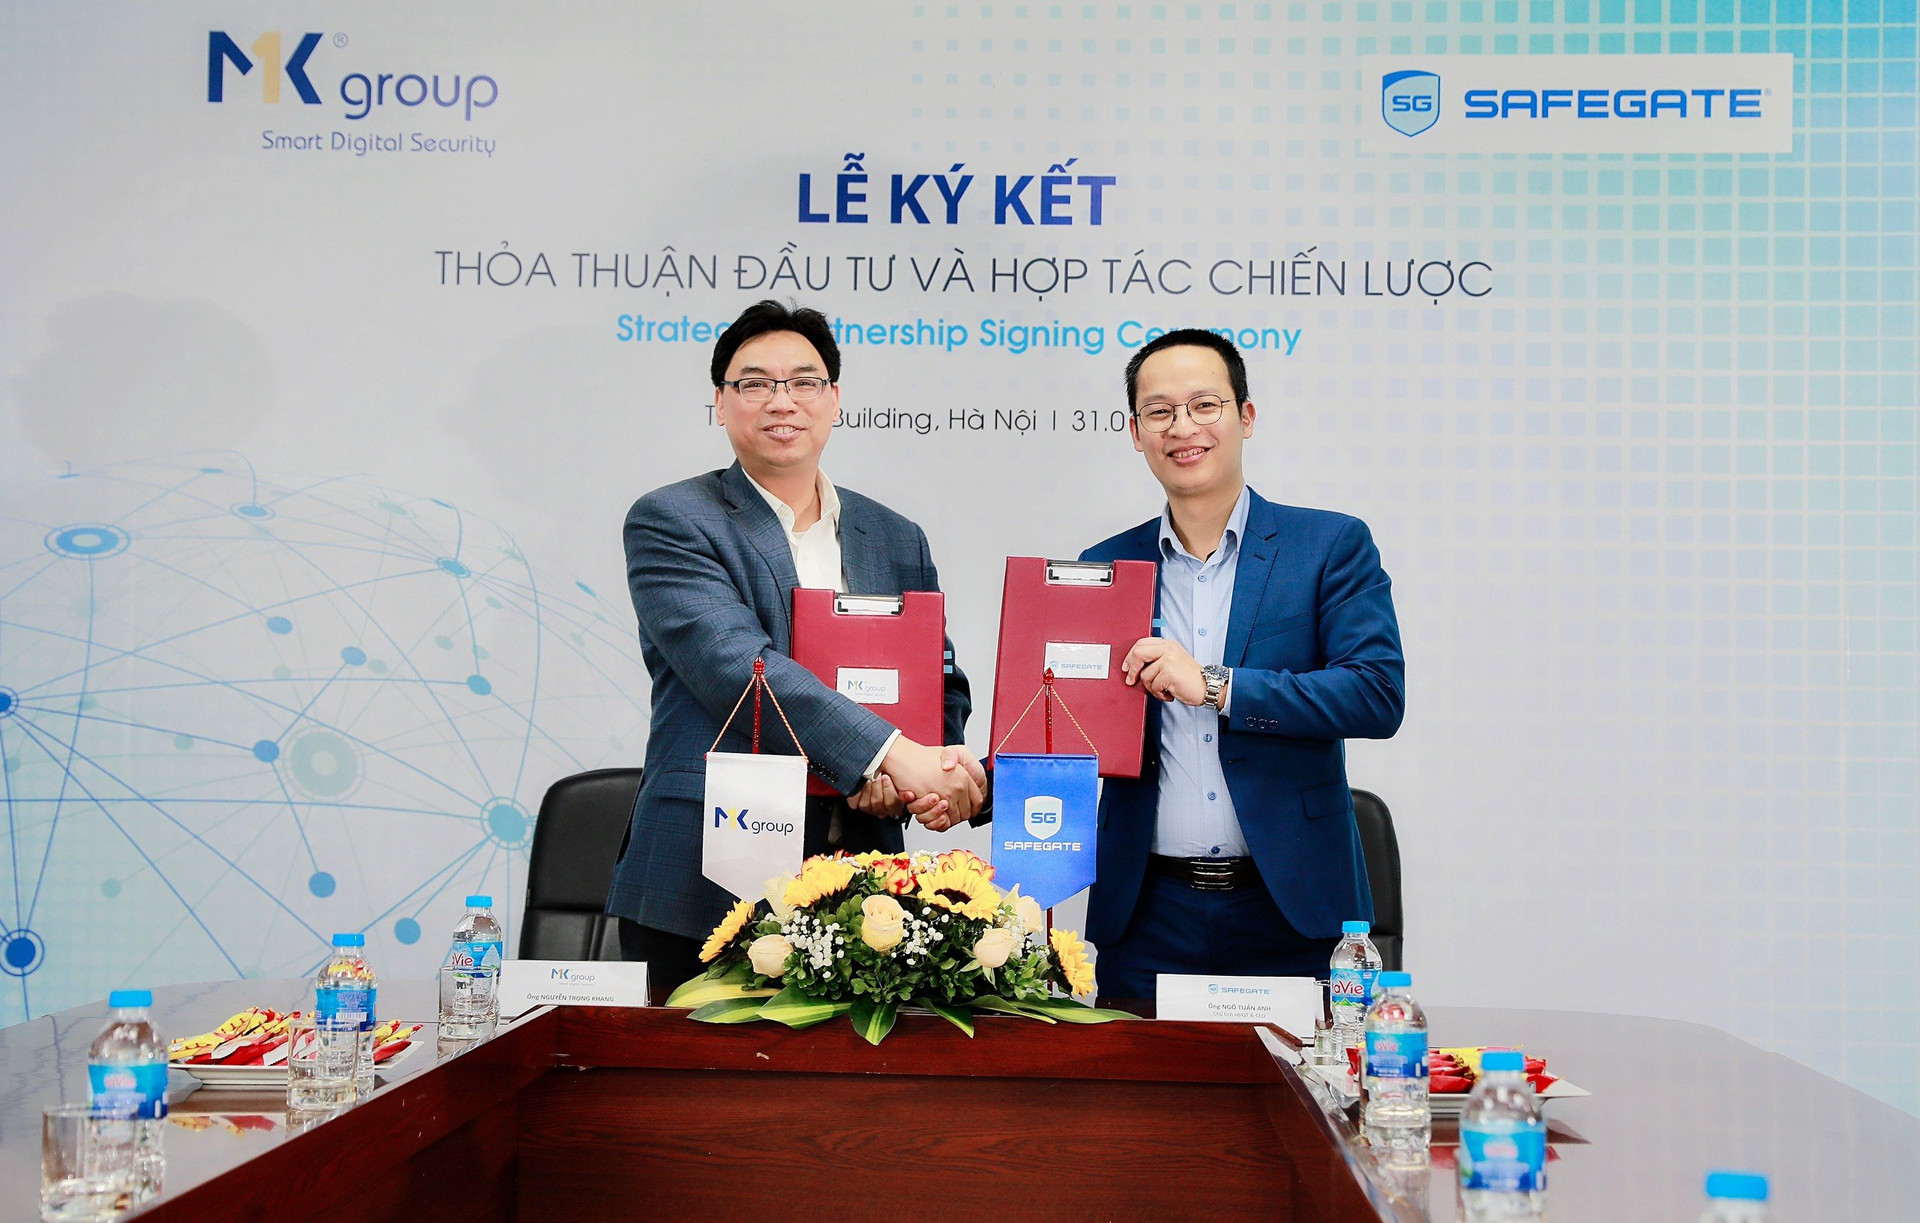 MK Group ký thỏa thuận đầu tư và hợp tác chiến lược với Smart Cyber Security, tiếp tục Chiến lược liên minh các doanh nghiệp công nghệ Việt